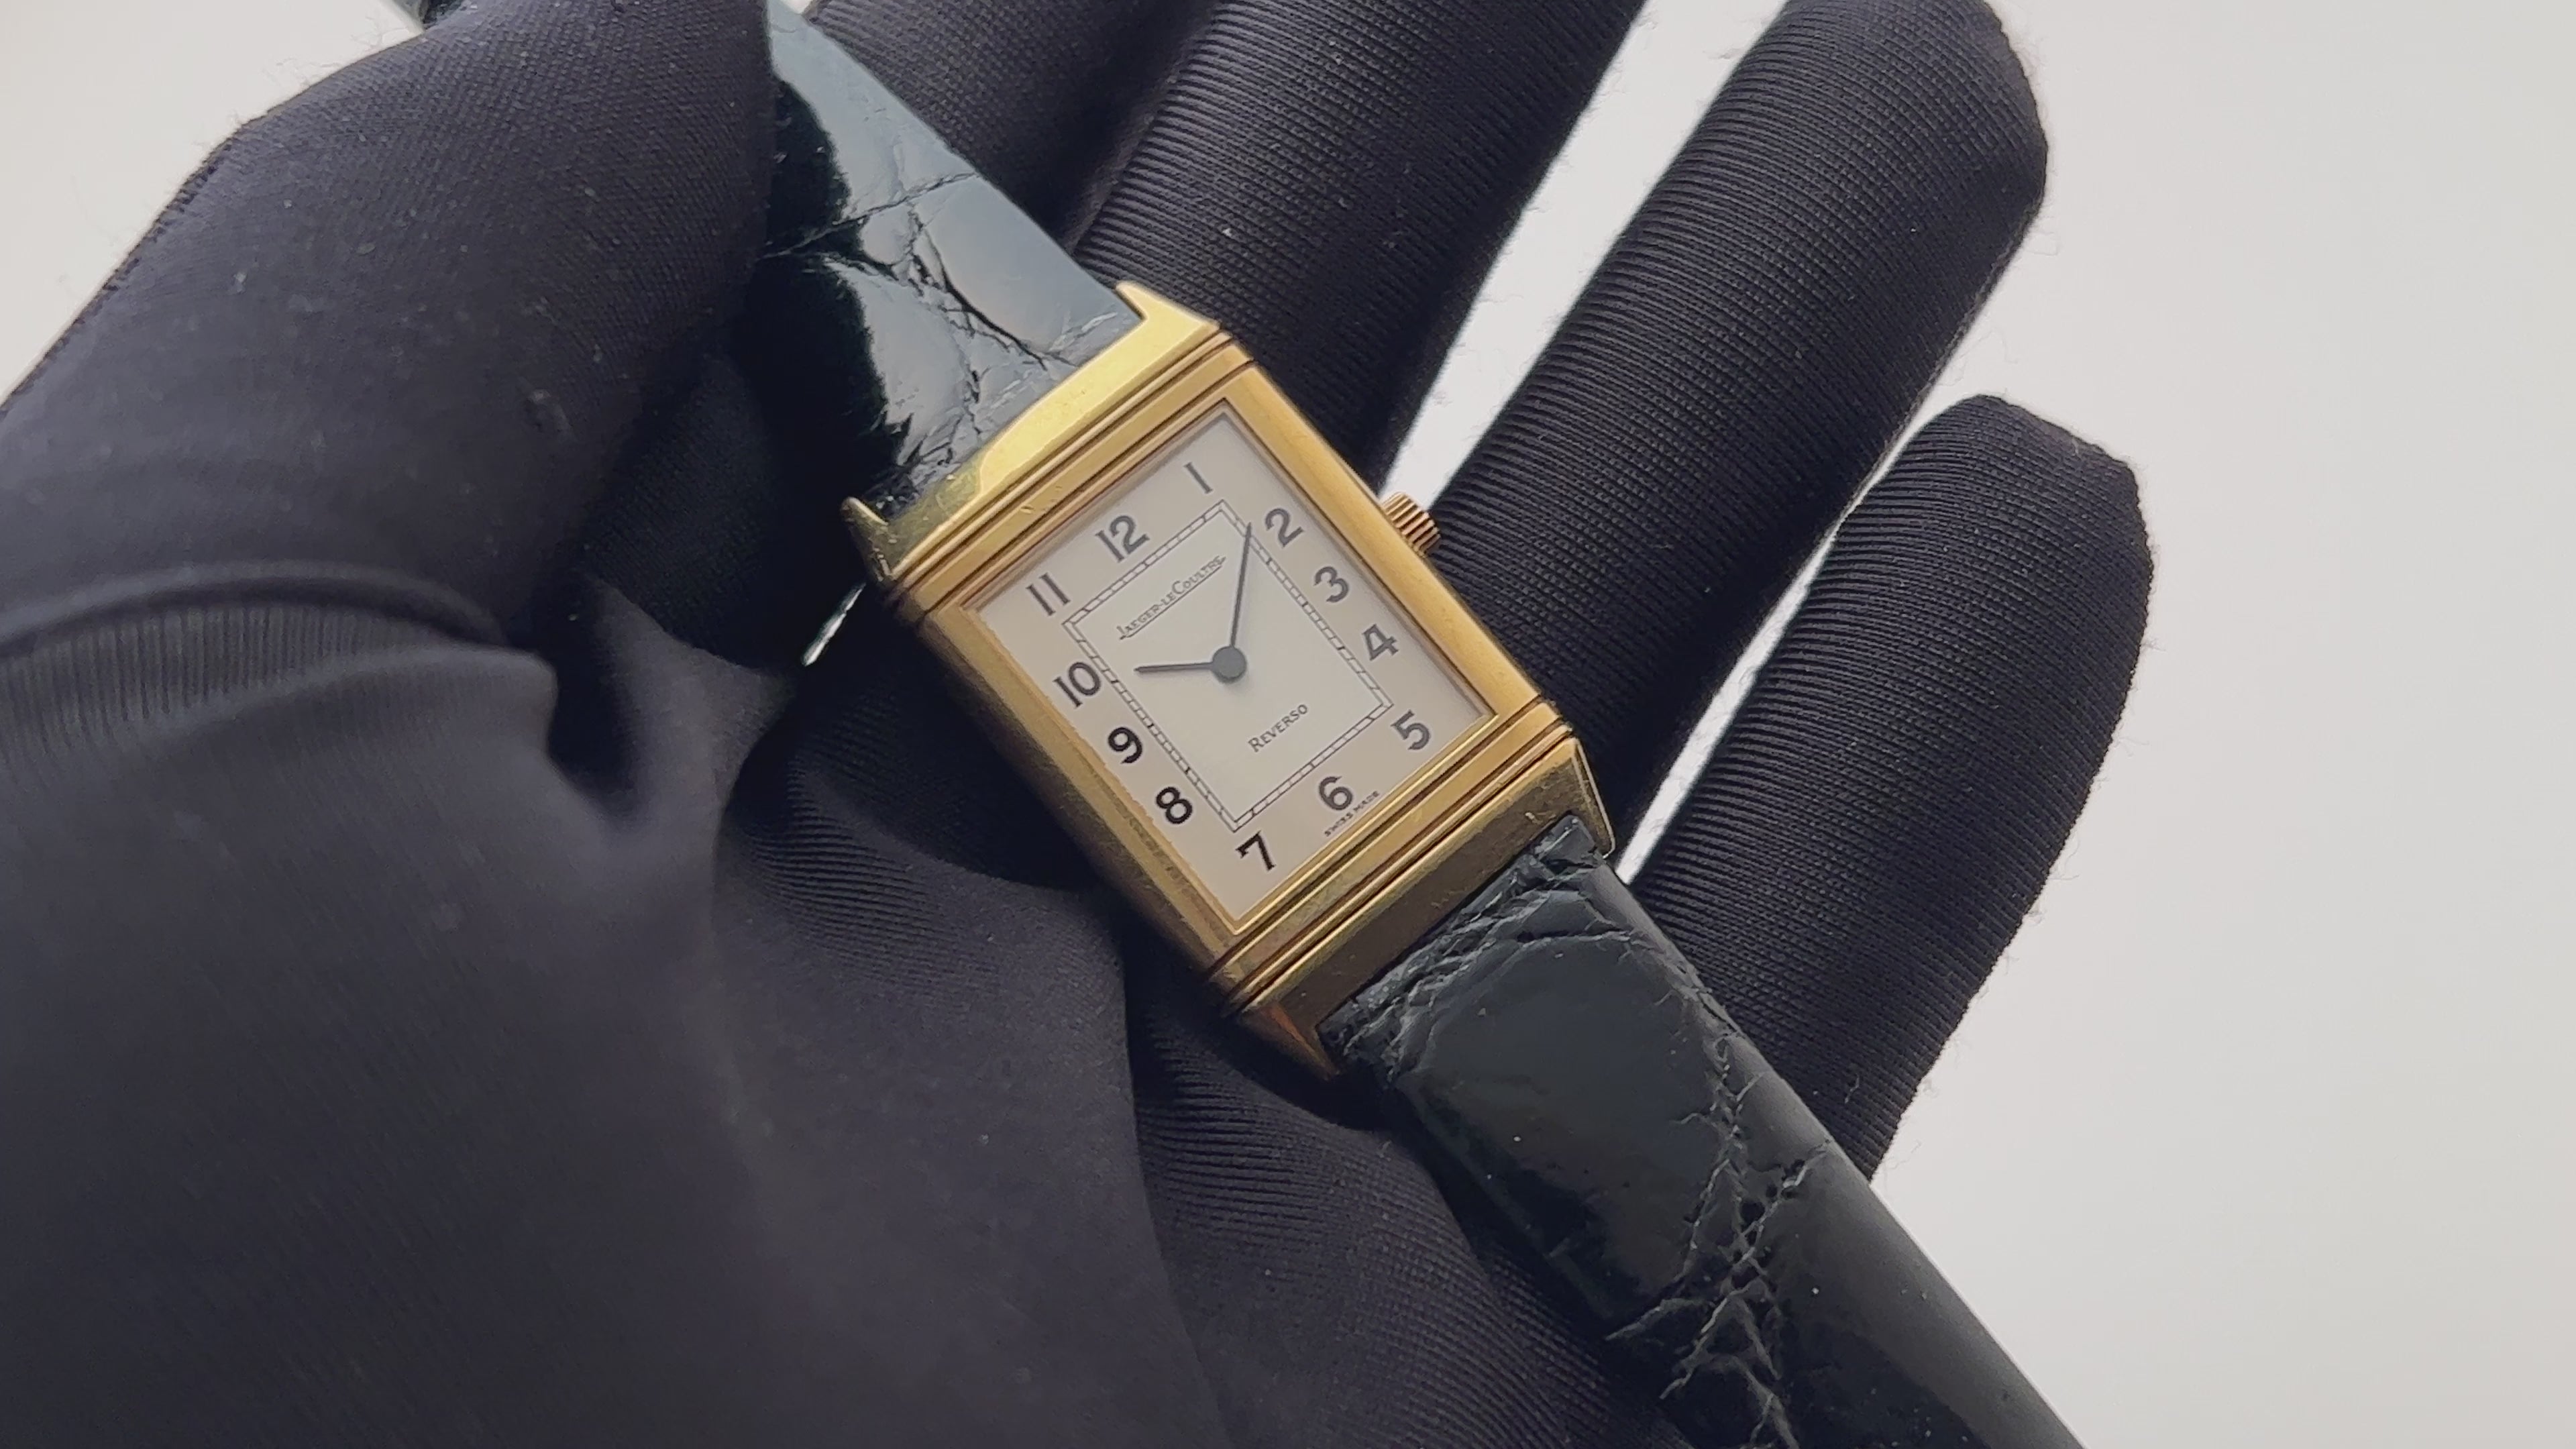 ジャガールクルト 18K 金無垢腕時計 ヴィンテージモデル - 腕時計 